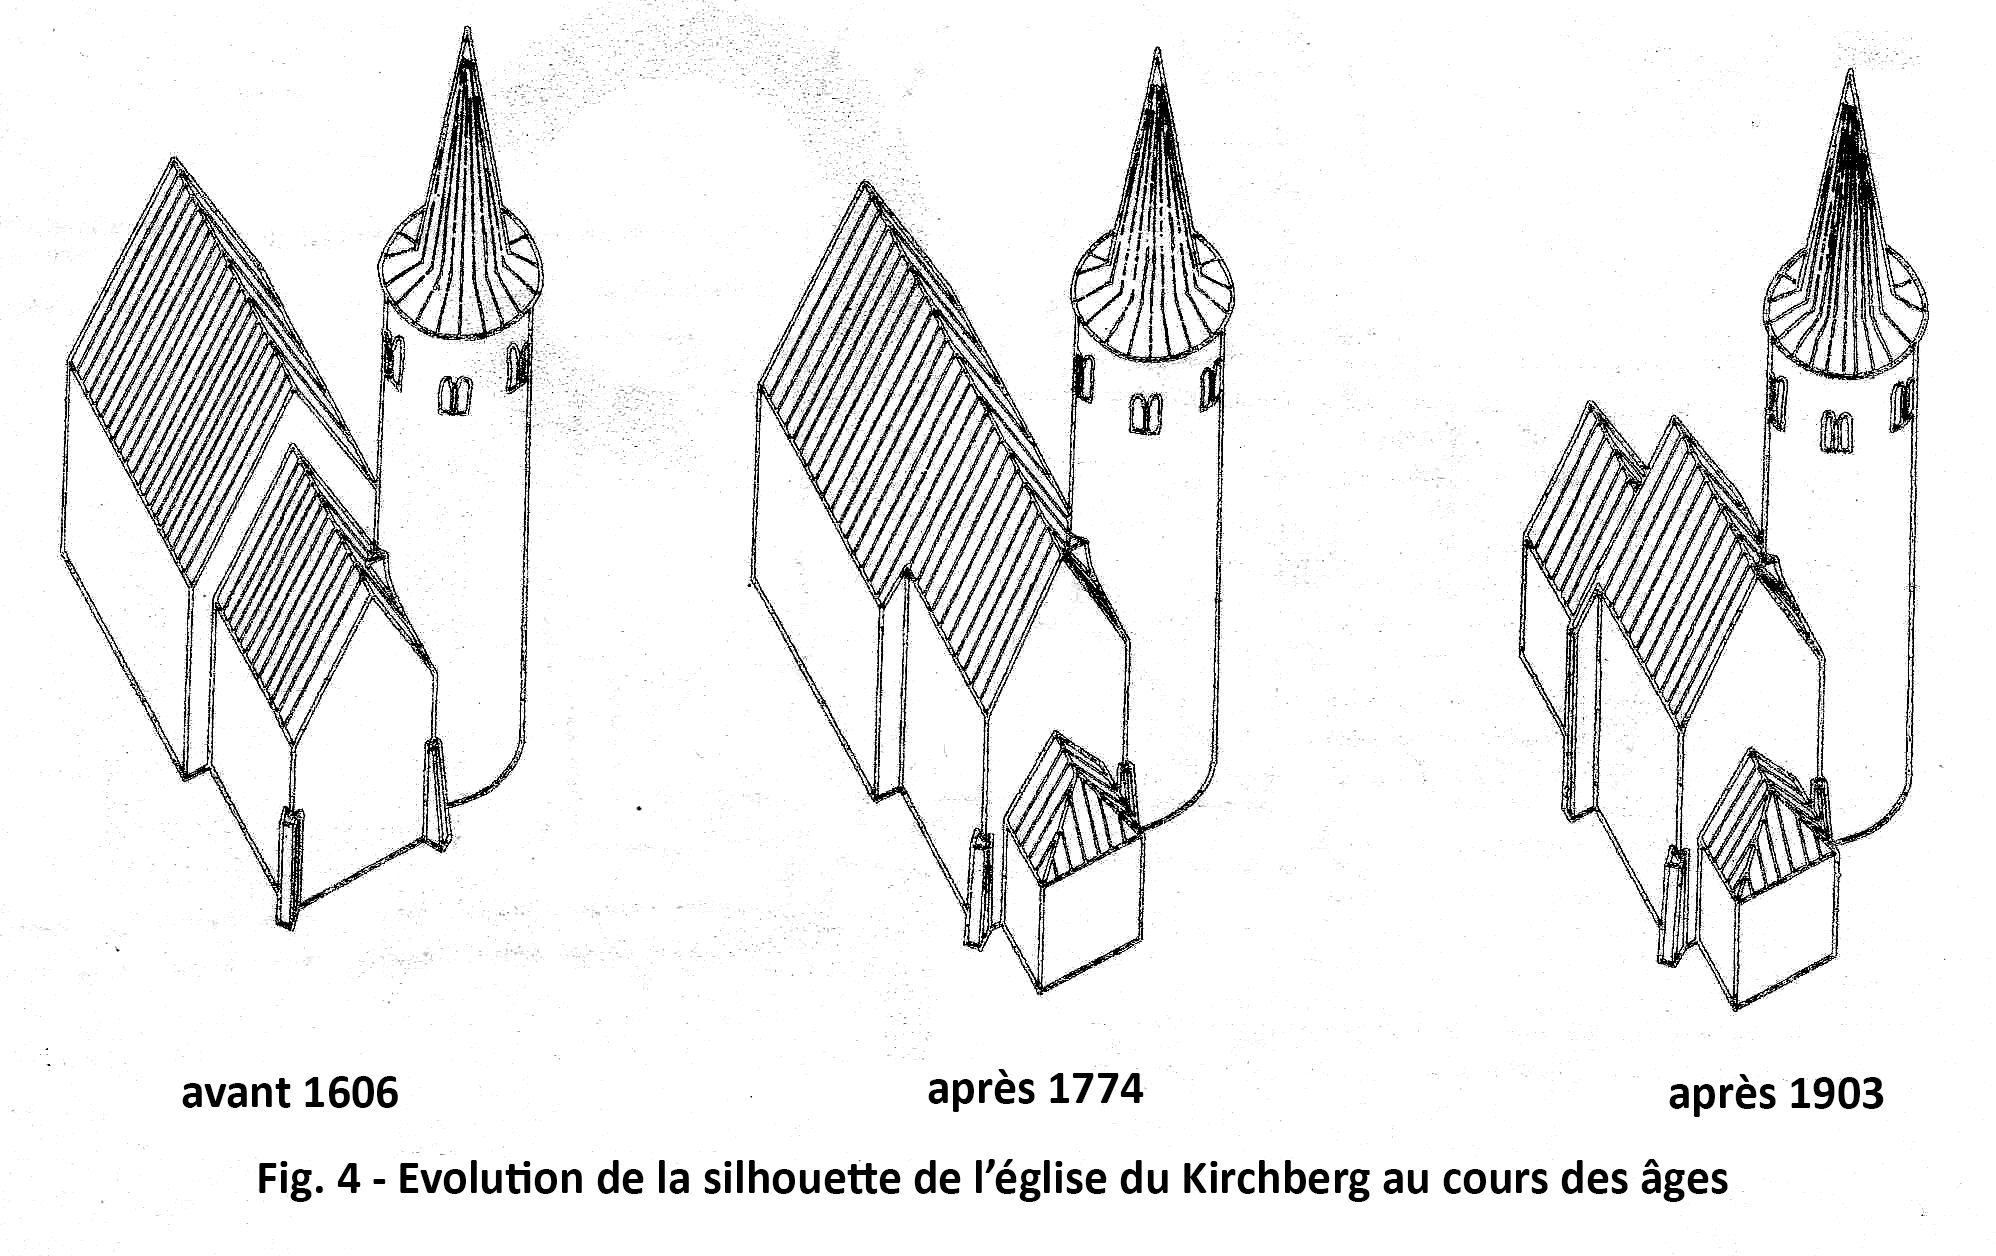 Evolution de la silhouette de l'église du Kirchberg au cours des âges (avant 1606, après 1774 et après 1903)